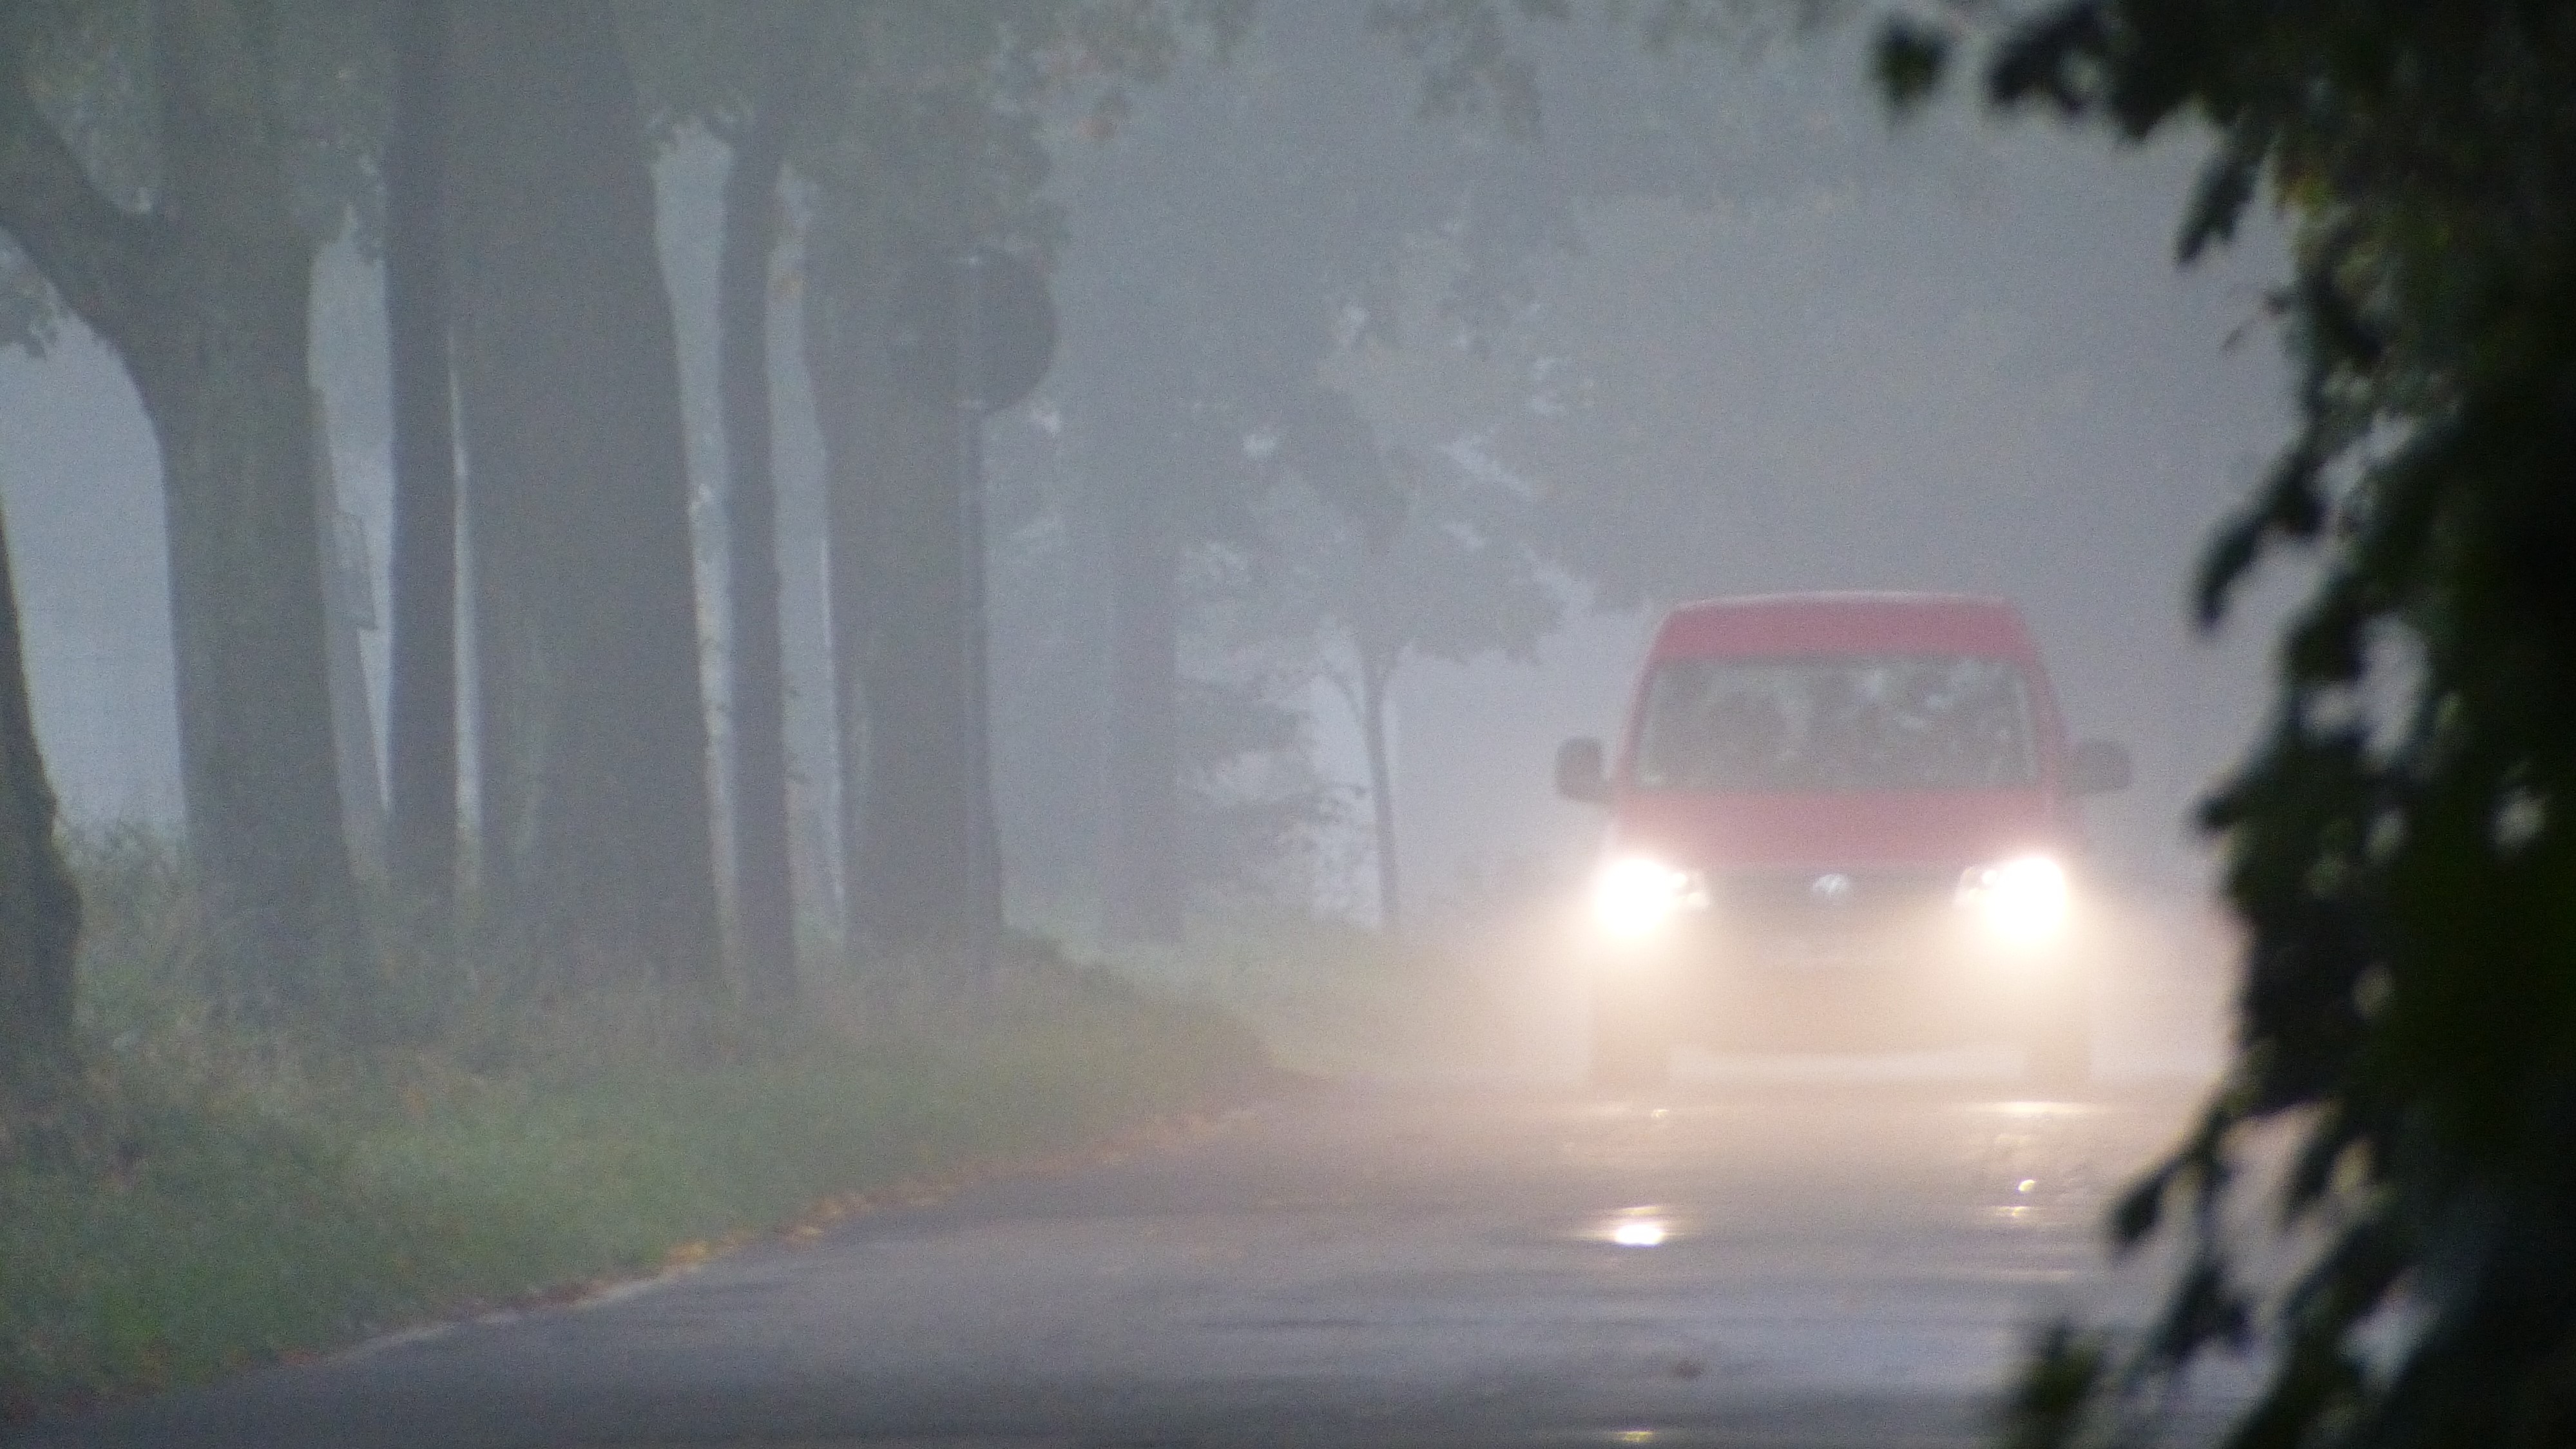 ADAC Tipps zum sicheren Fahren im Nebel